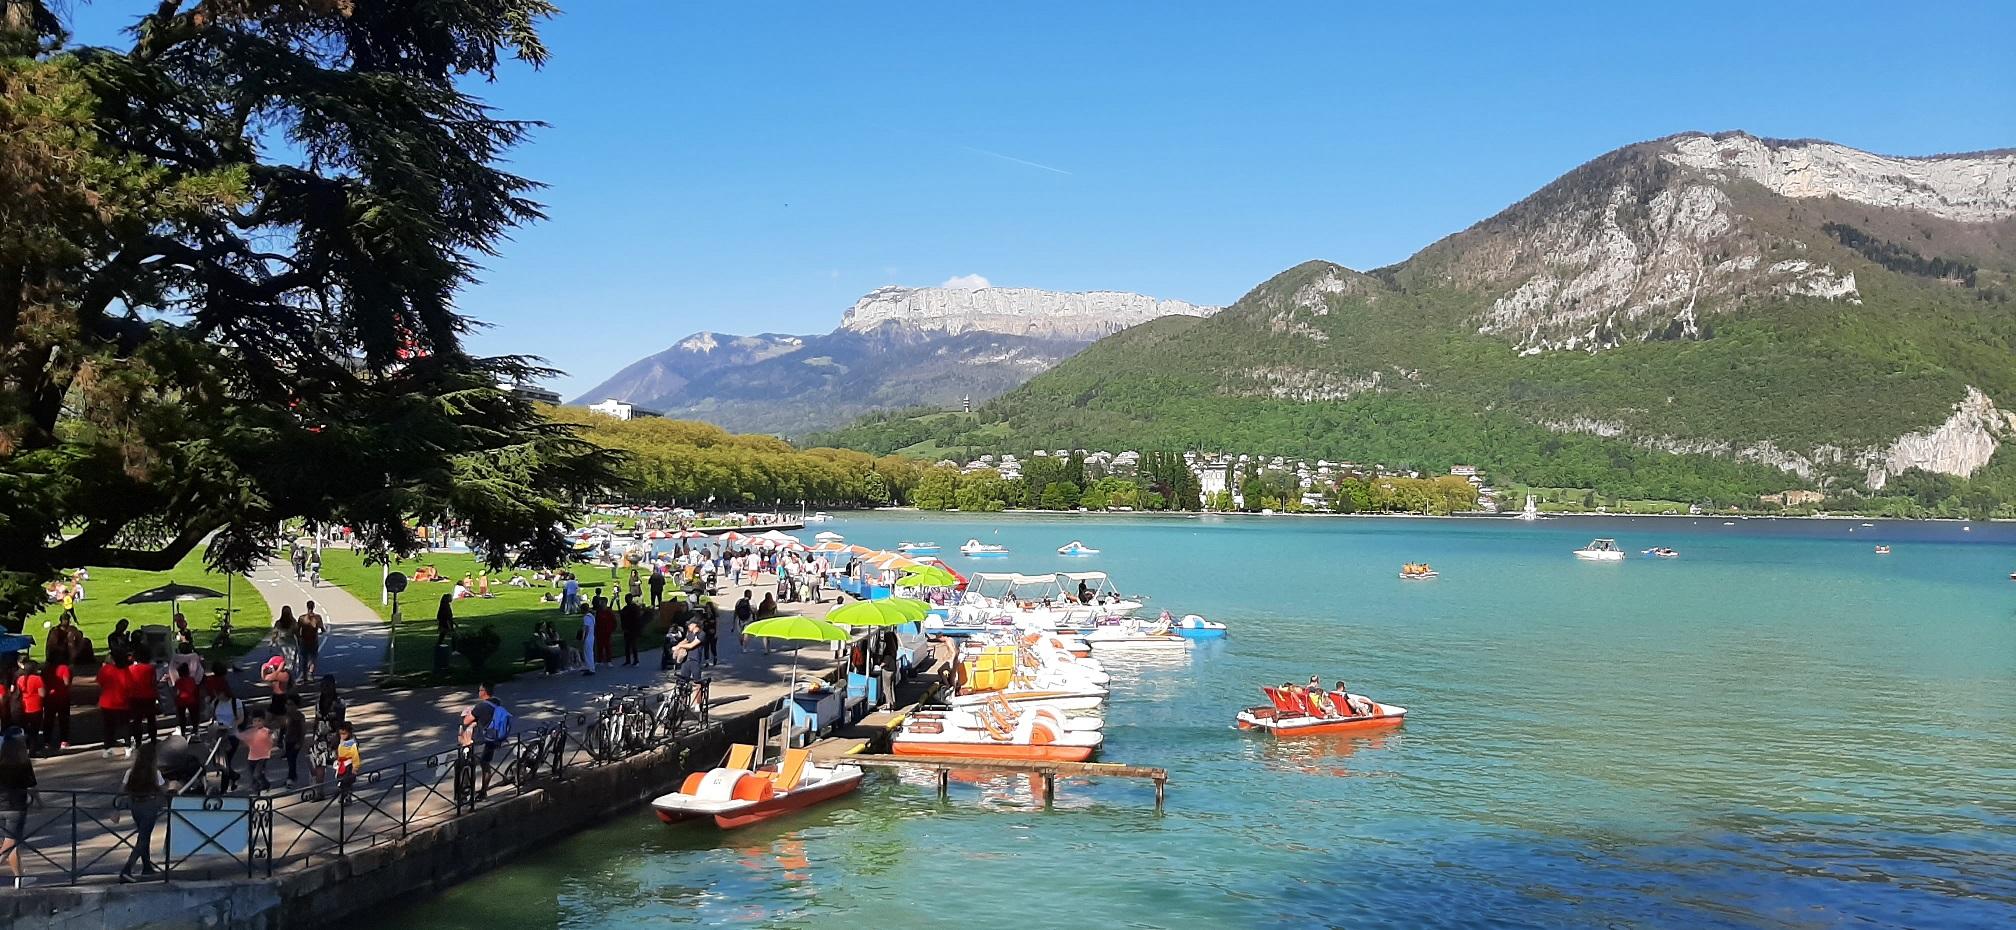 Le lac d’Annecy au printemps… tout un programme !